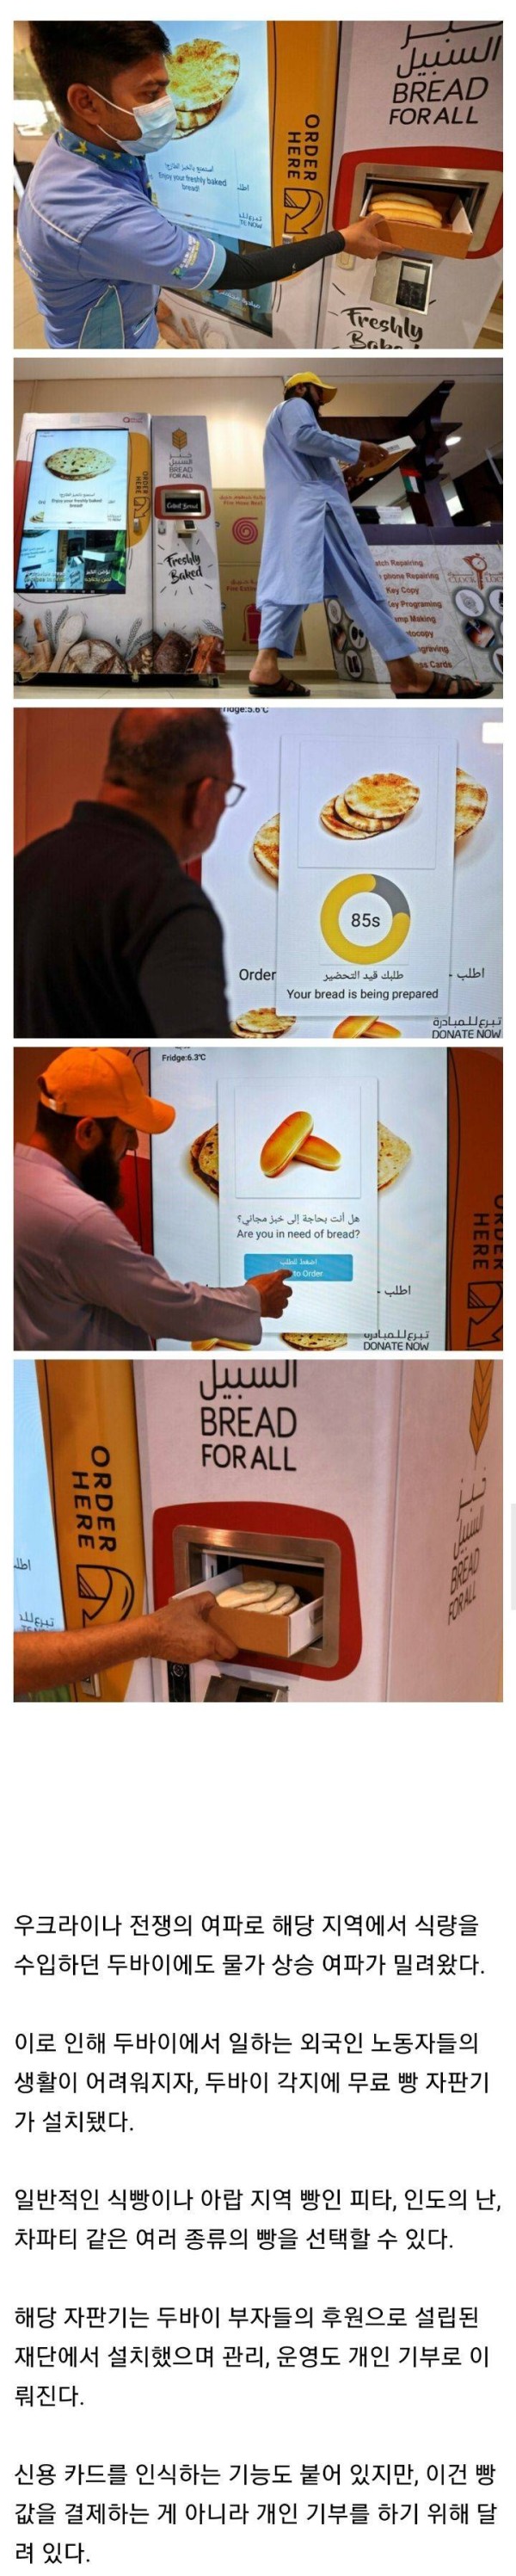 기부 클라스도 남다른 두바이의 무료 빵 자판기